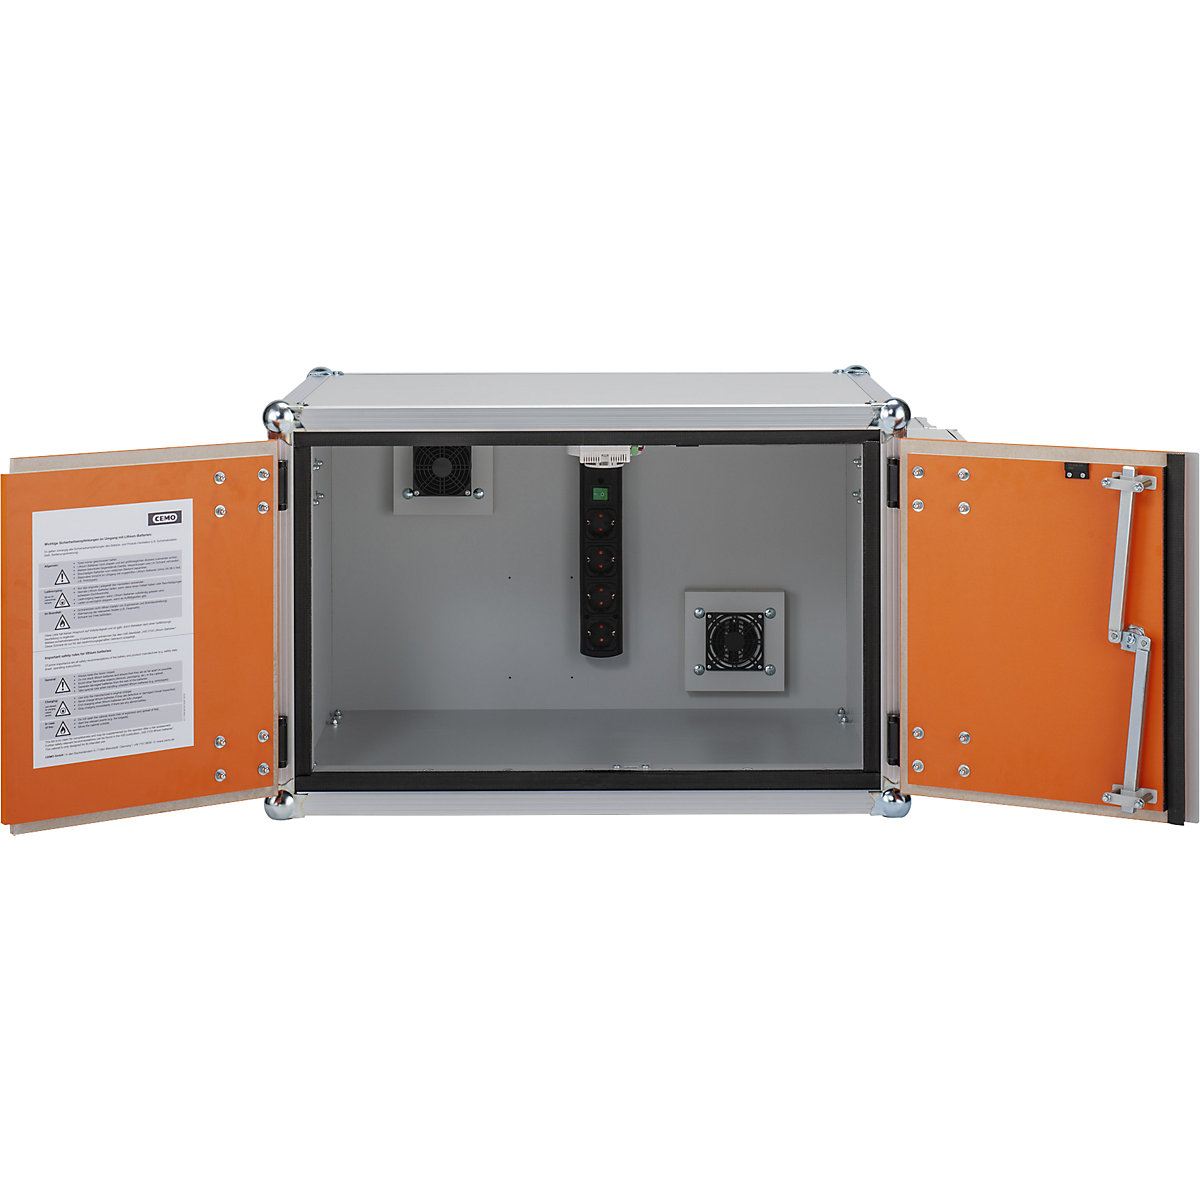 PREMIUM PLUS biztonsági akkumulátortöltő szekrény - CEMO